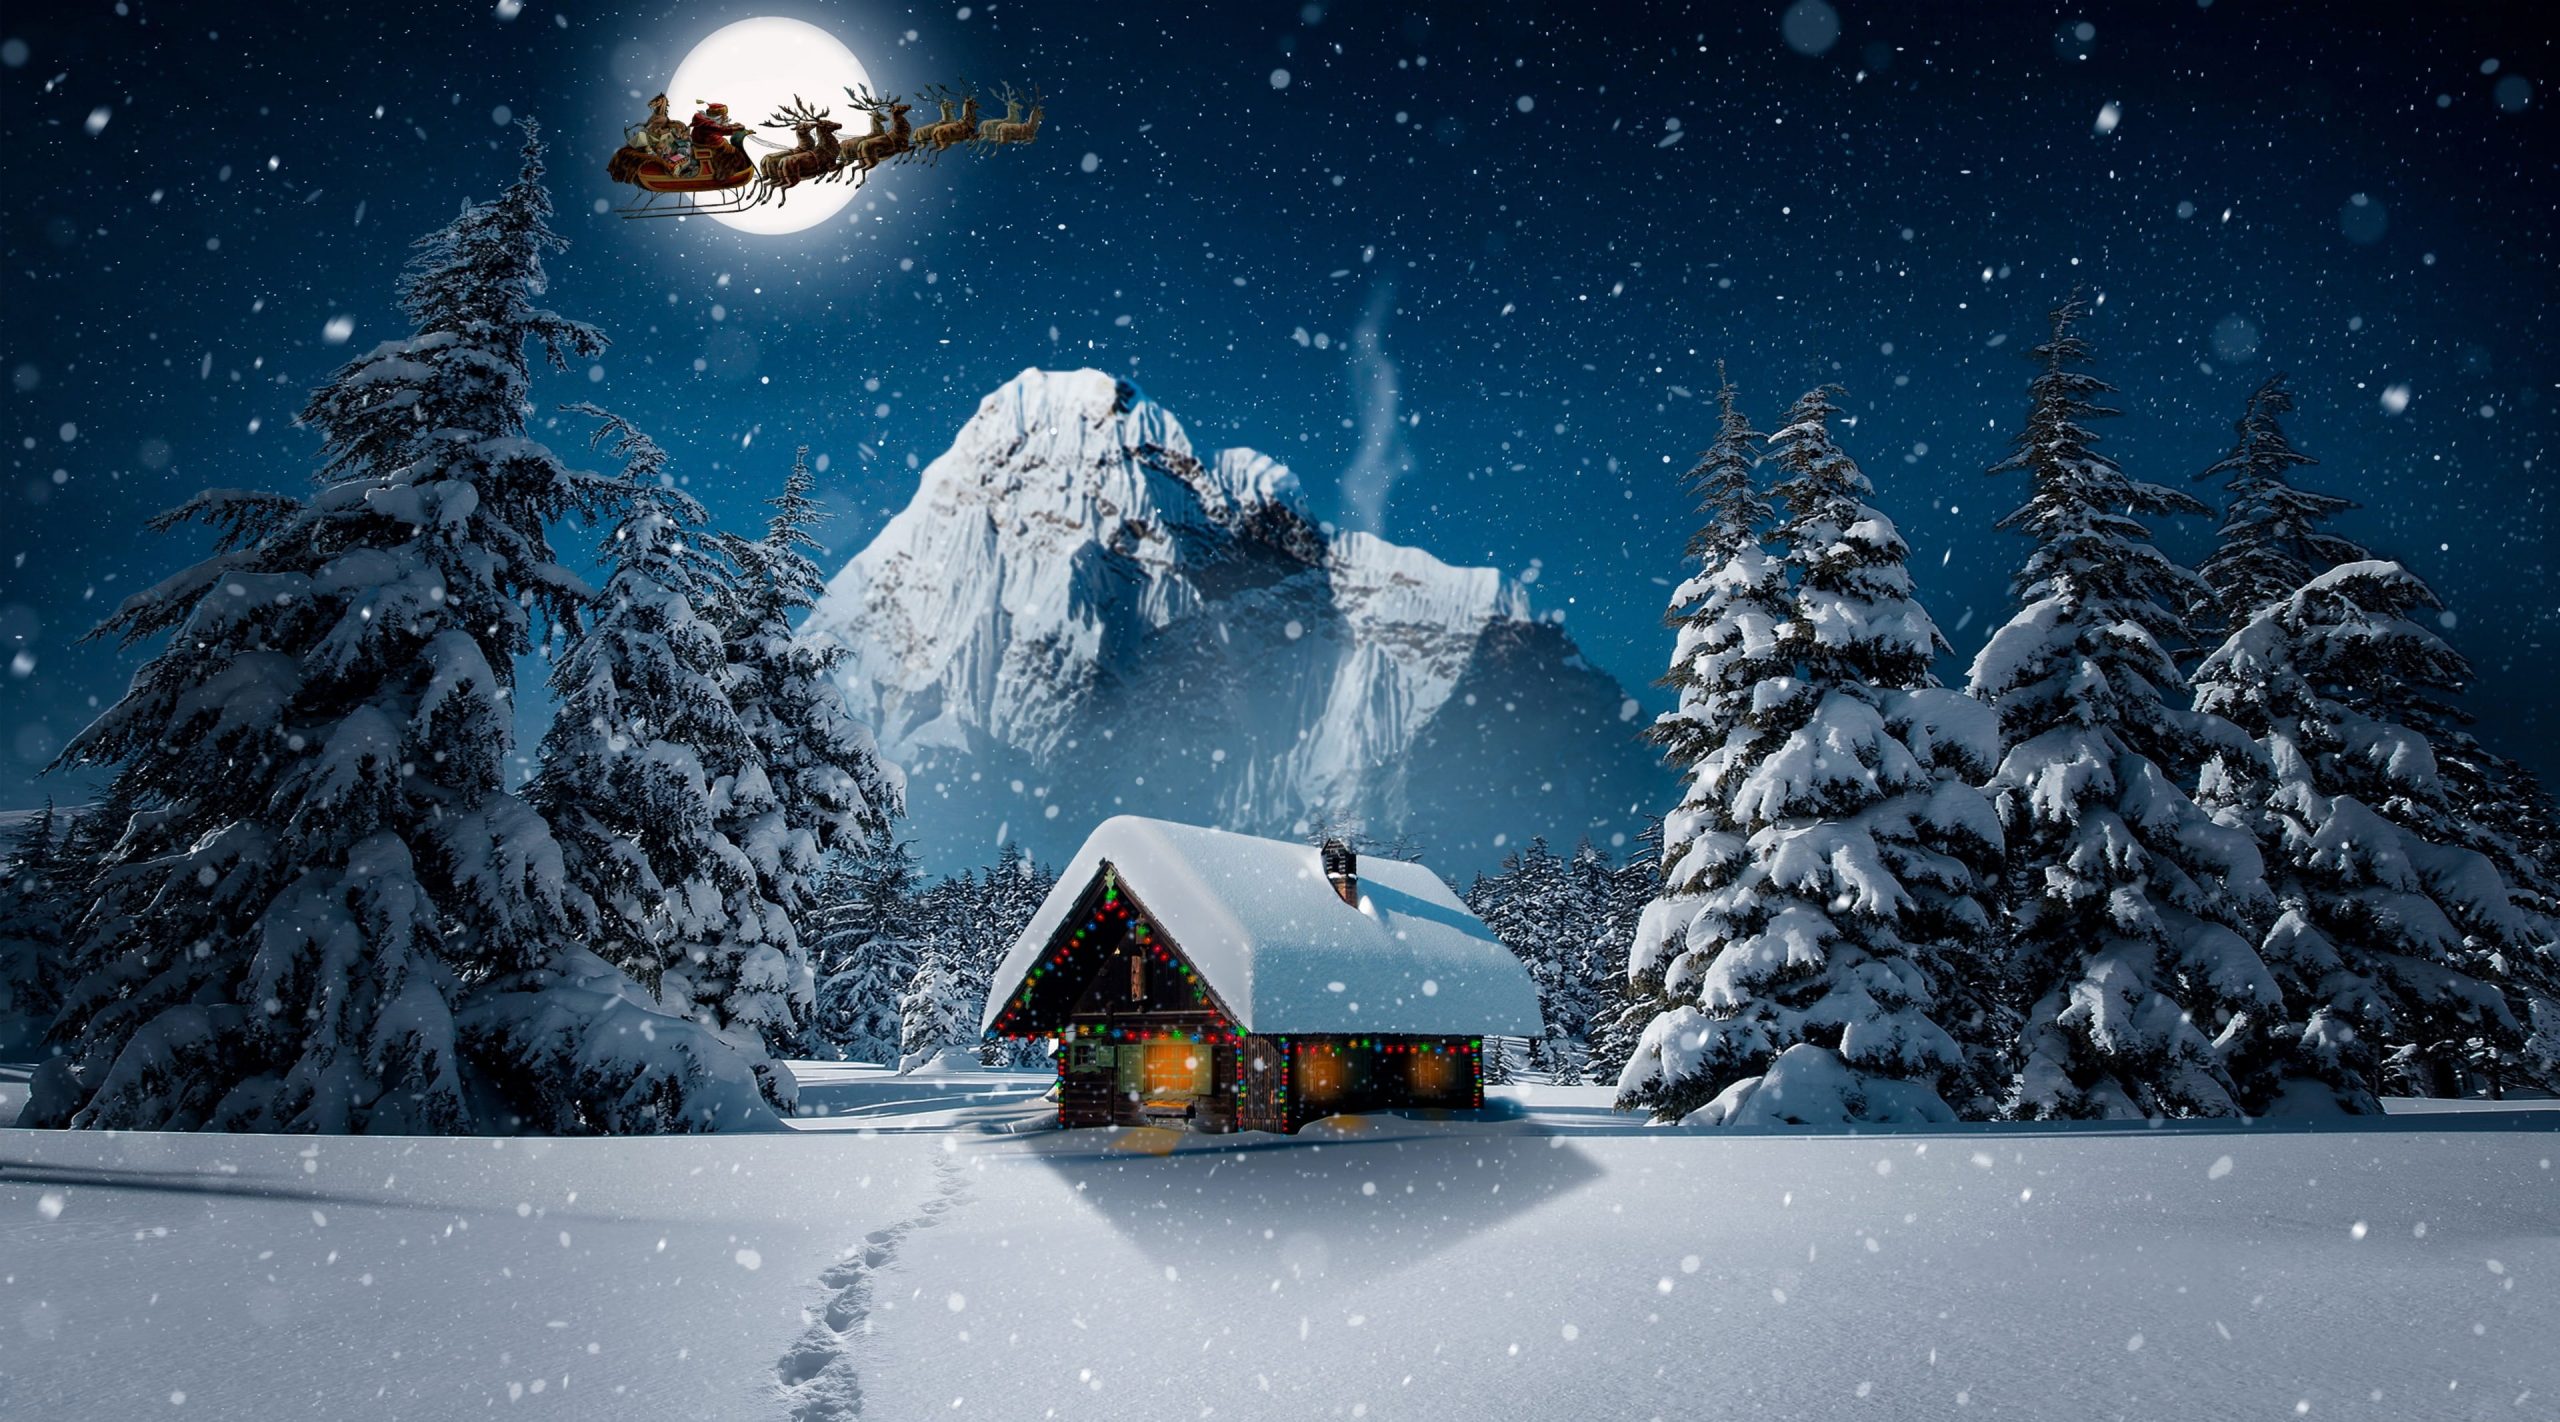 Christmas Winter 4K wallpaper, Holidays, Landscape, Night, Design, Fantasy